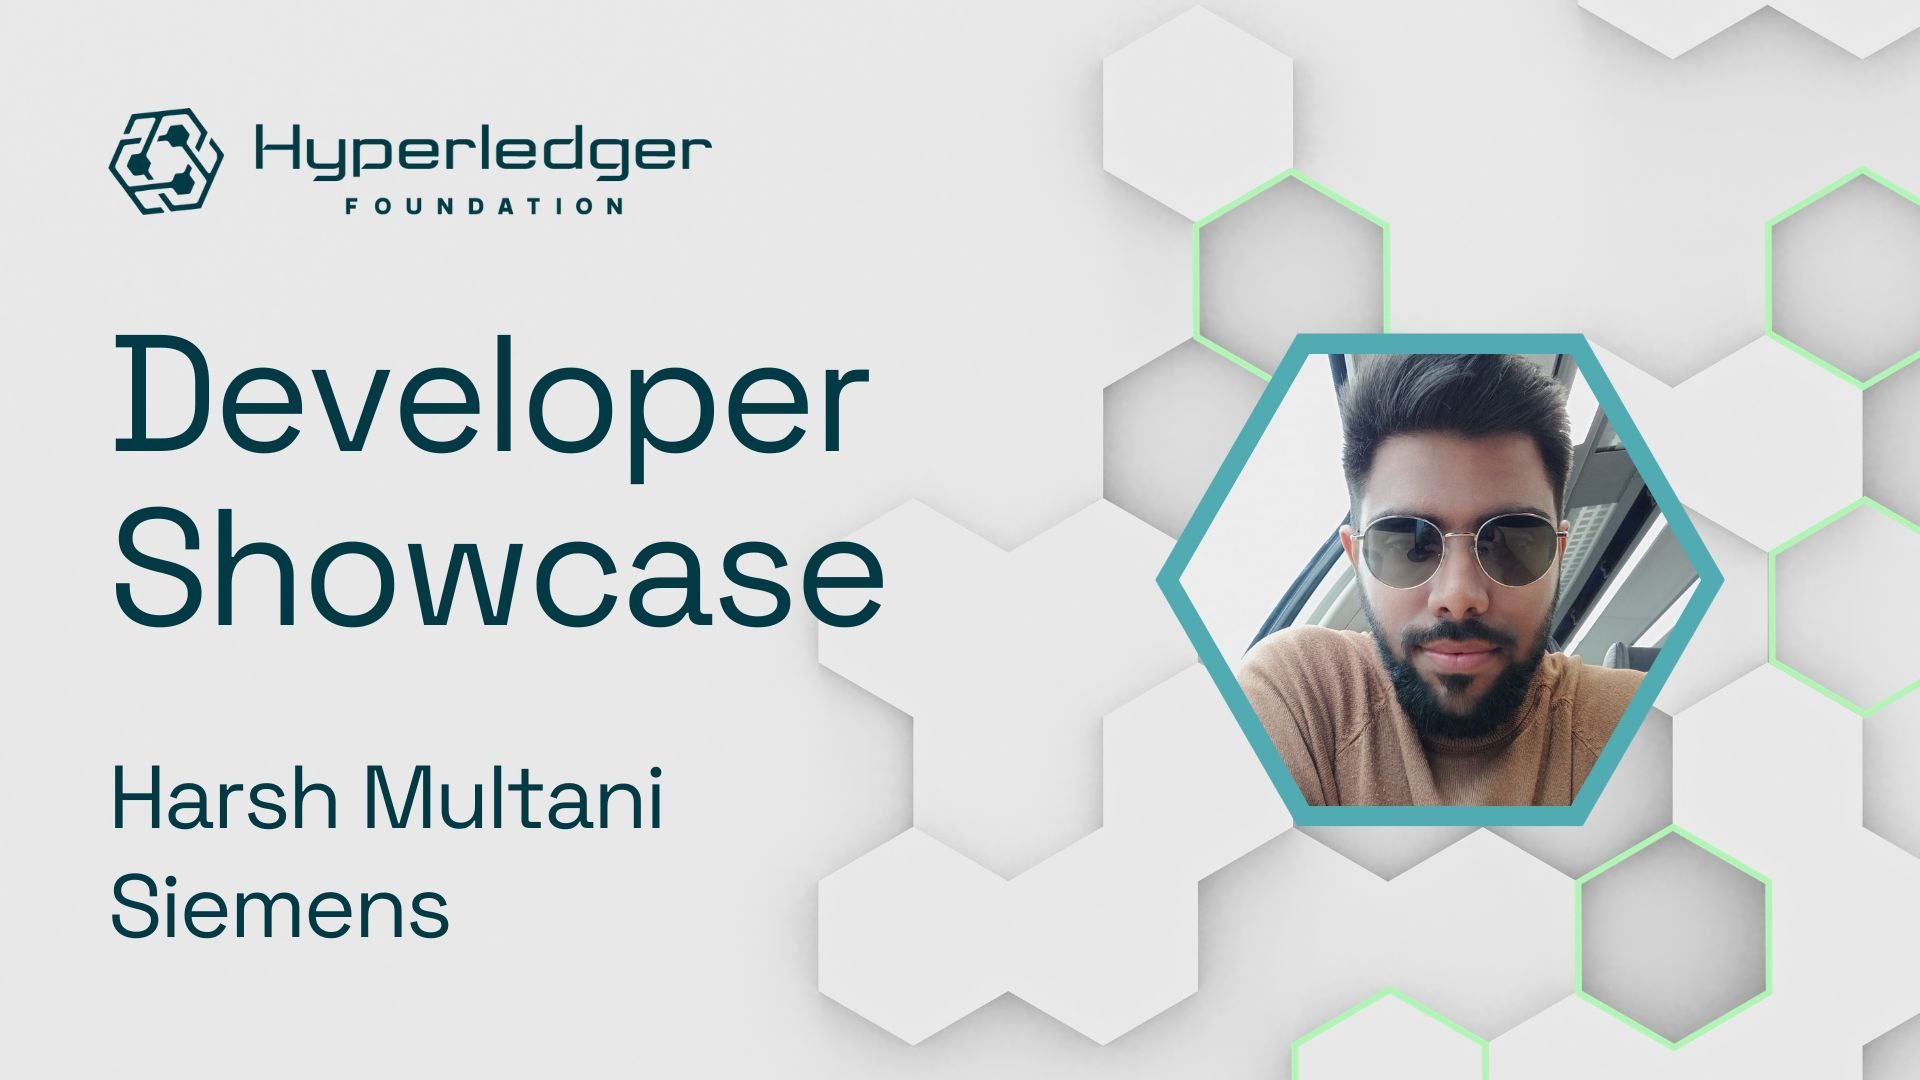 Harsh_Multani_Hyperledger Developer Showcase Social Card